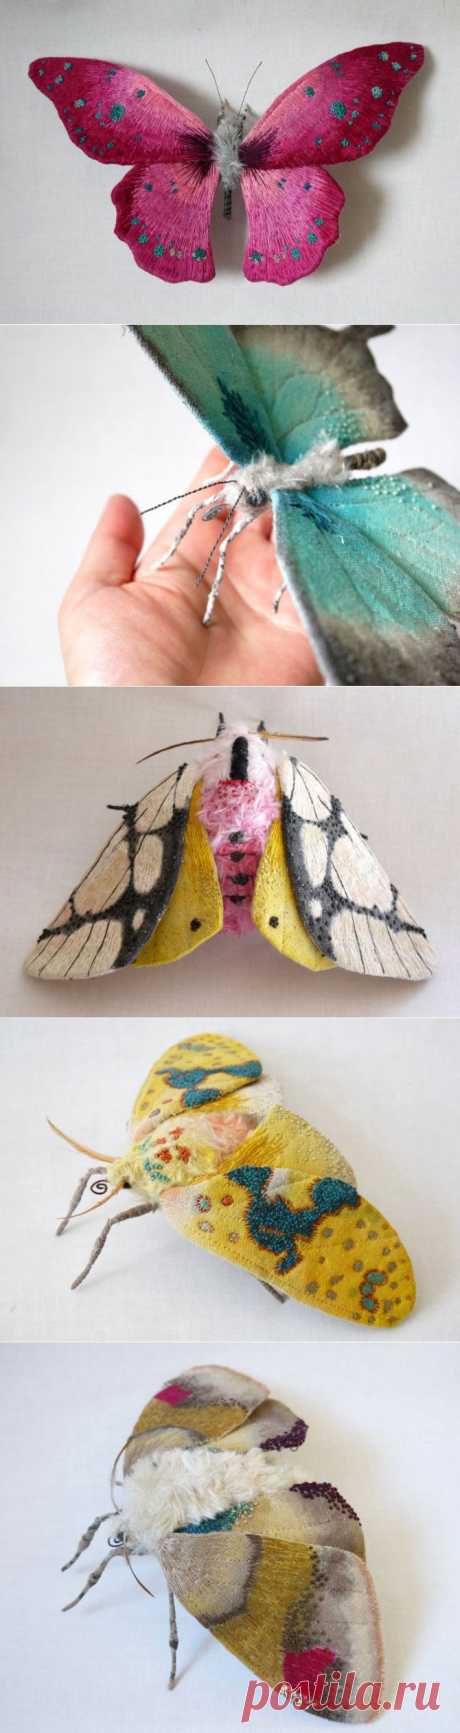 Реалистичные скульптуры в виде текстильных мотыльков и бабочек